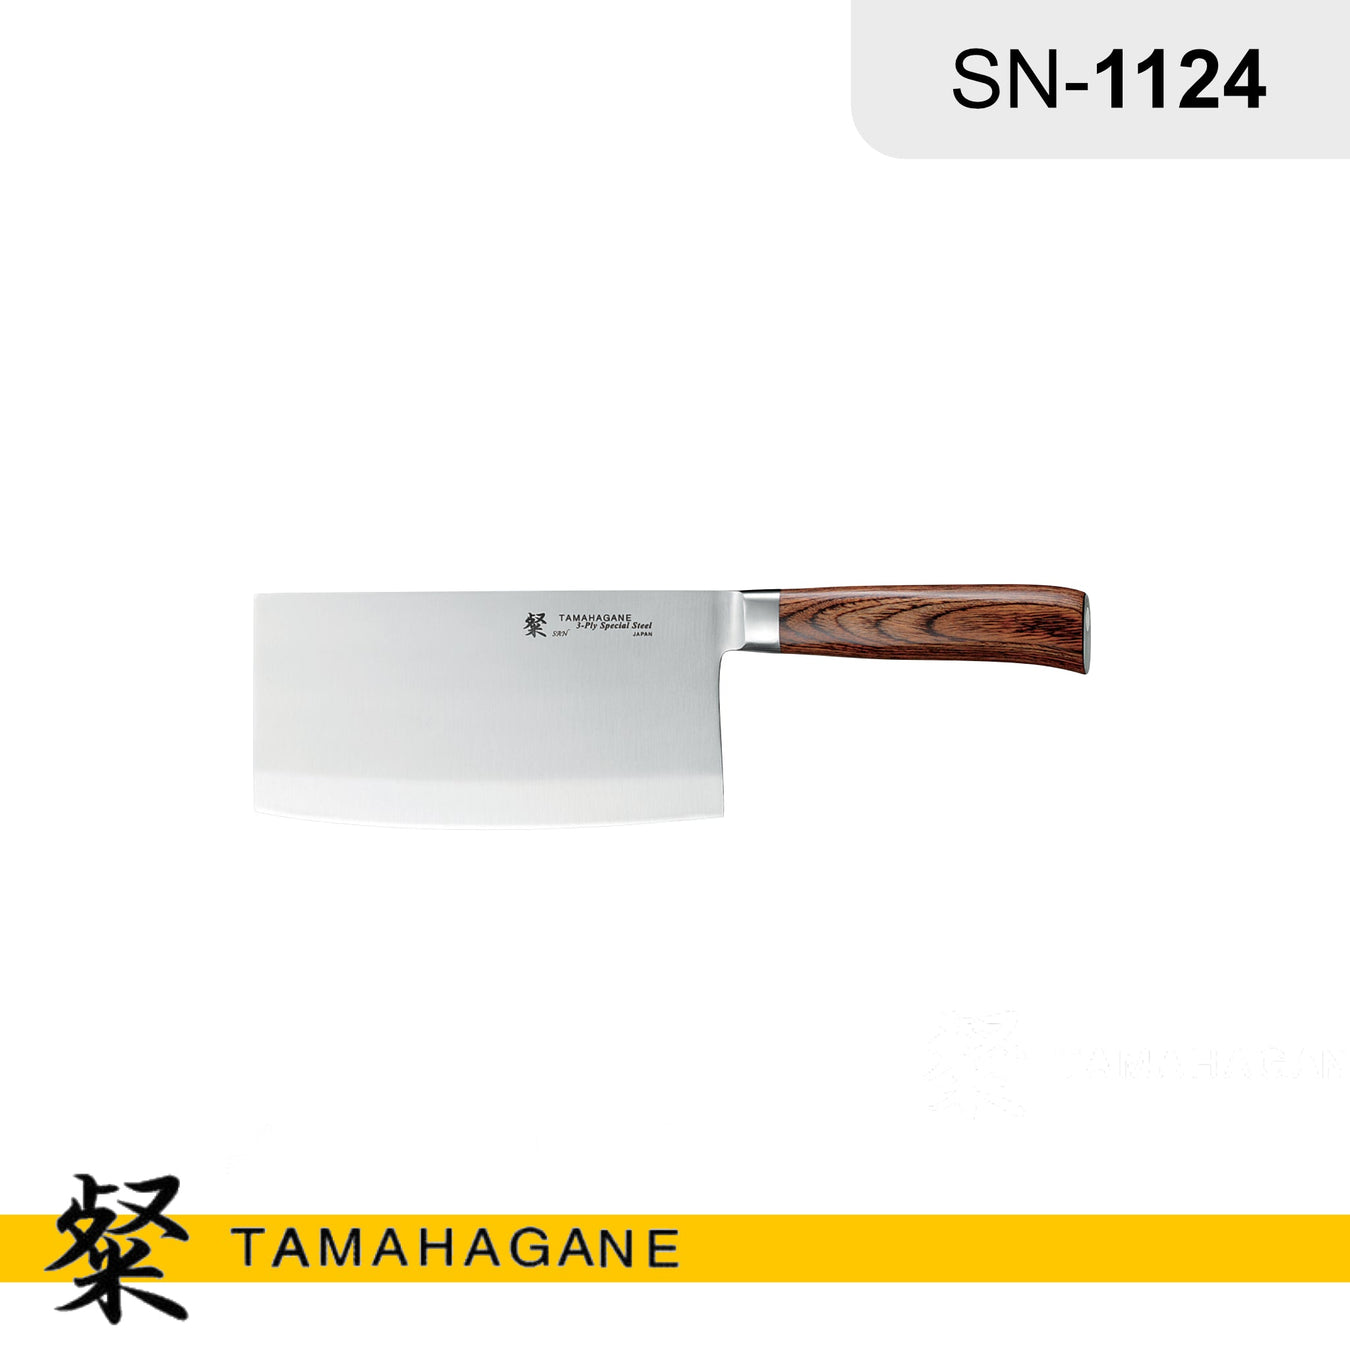 Tamahagane (Japan) Brand